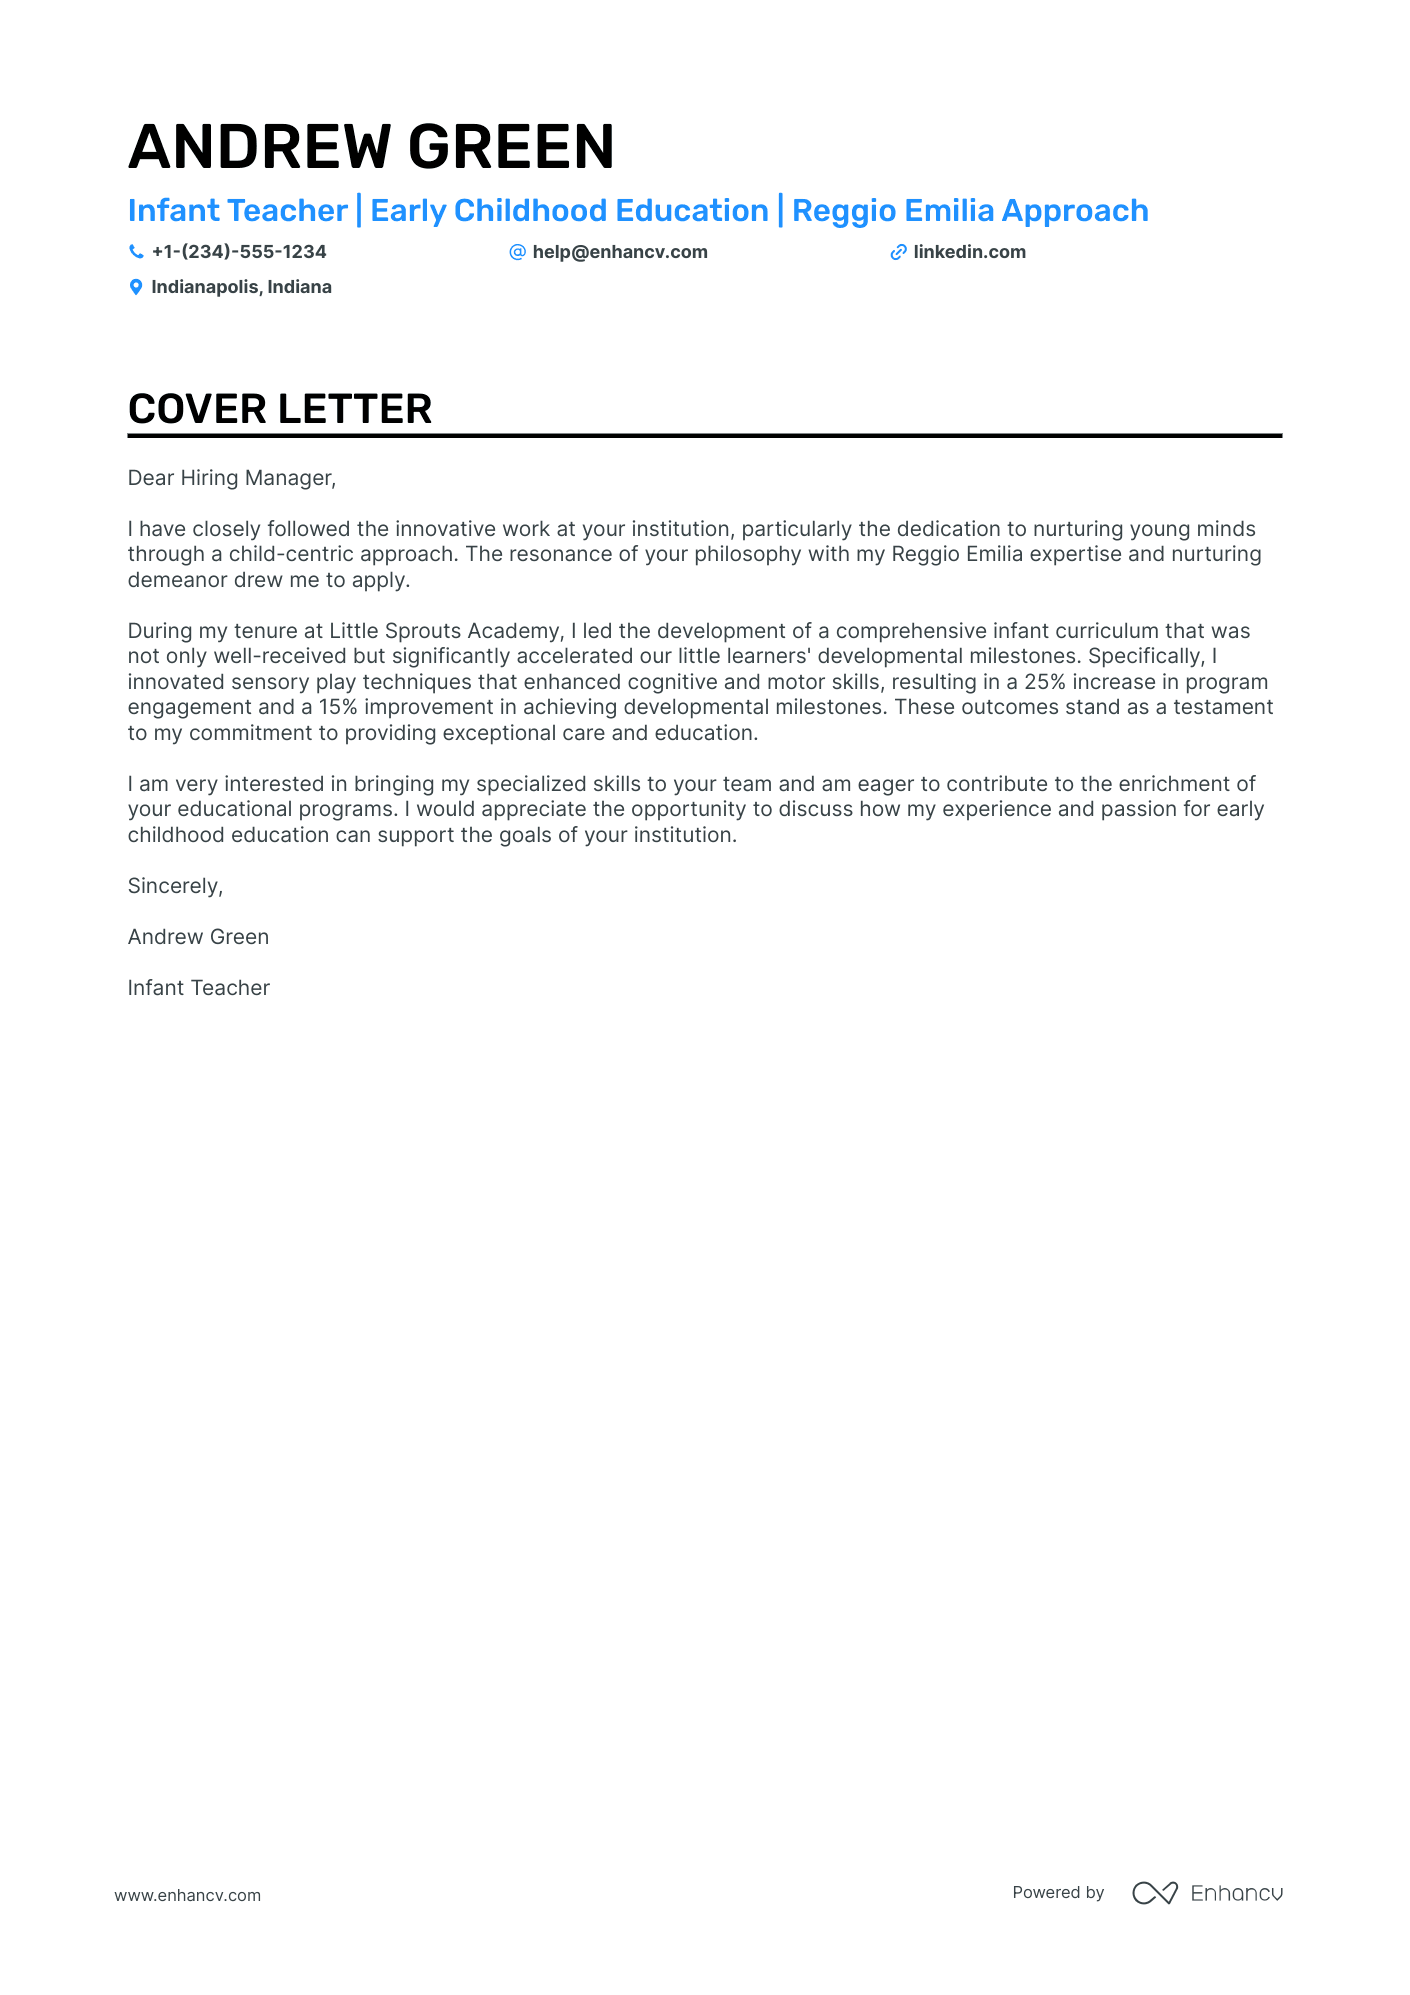 Infant Teacher cover letter